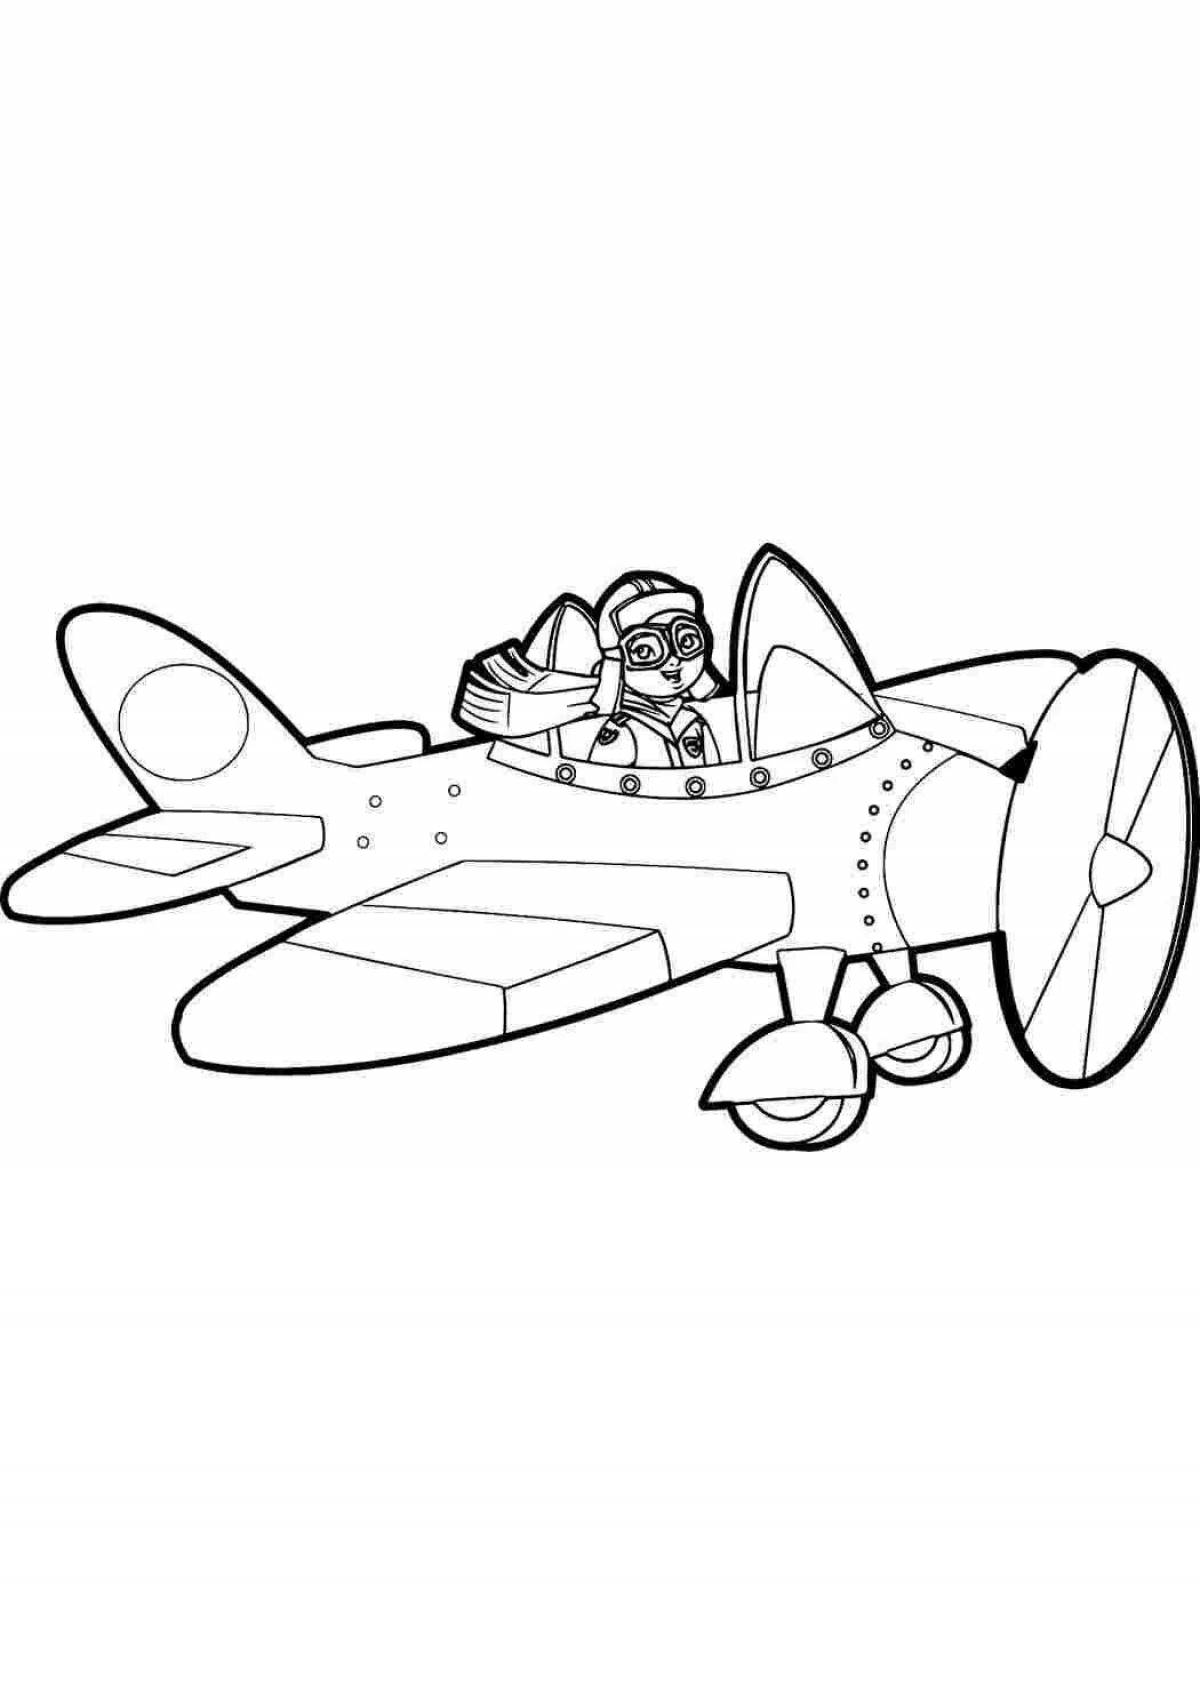 Adorable pilot coloring page